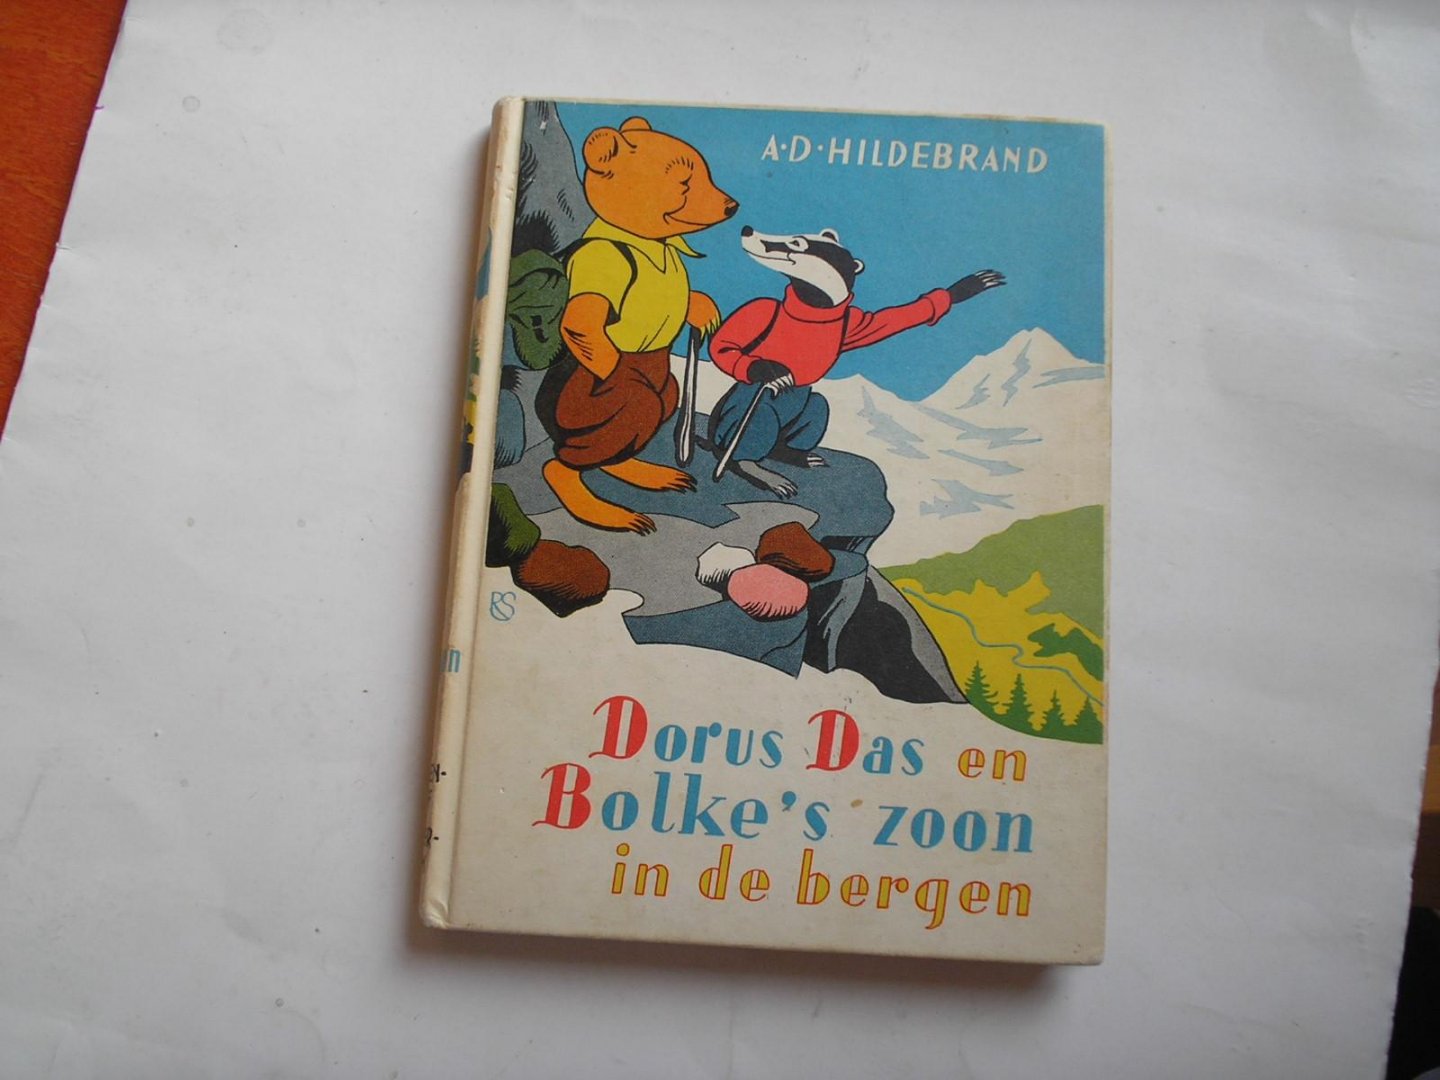 Hildebrand A.D. - Dorus Das en Bolke's zoon in de bergen